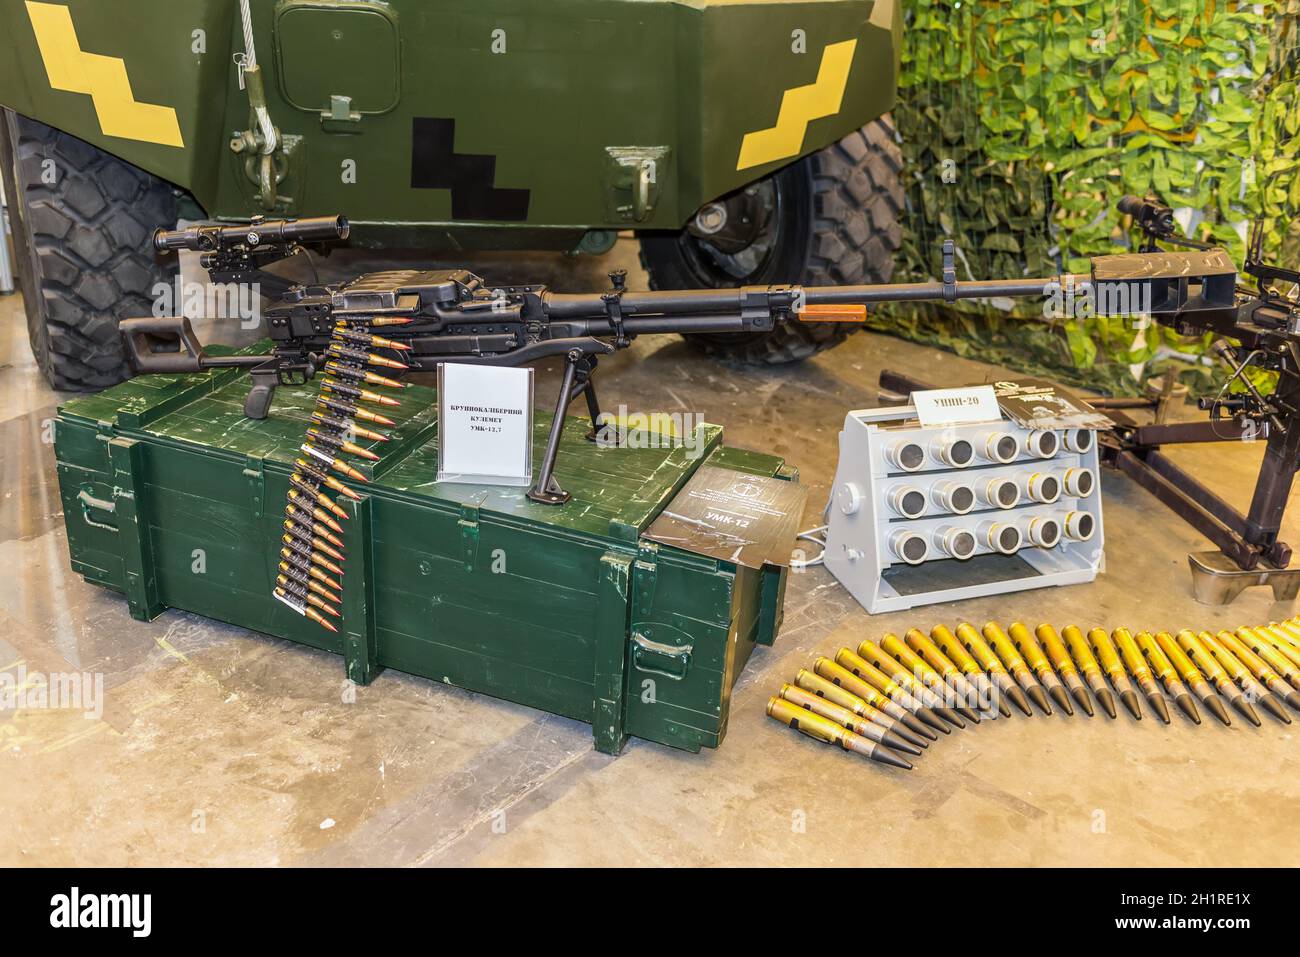 Kyiv, Ukraine - October 11, 2017: Weapon of the War in Ukraine. Heavy machine gun during exibition. Stock Photo